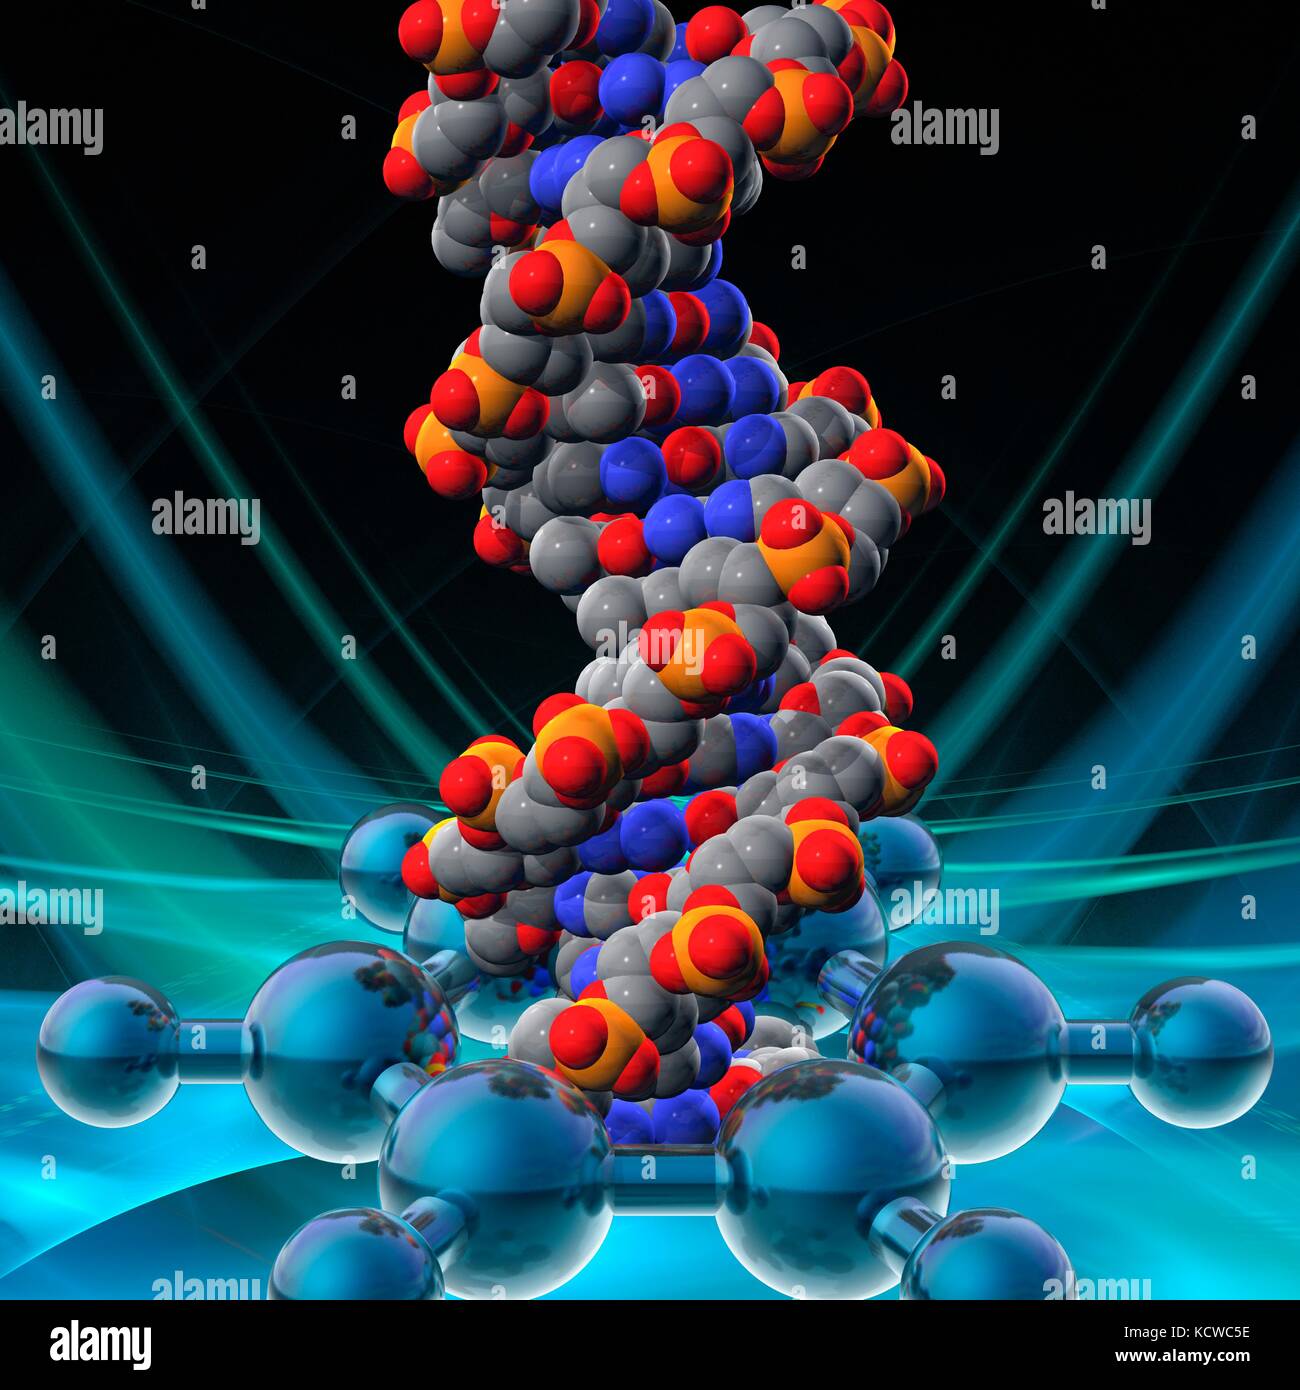 Illustrazione concettuale di un doppio filamento di DNA (acido desossiribonucleico) molecola che viene danneggiato da una molecola di benzene. Il benzene è ampiamente riconosciuto carcinogeno per l'uomo (molecole non in scala). Il DNA è composto da due trefoli intrecciati in una doppia elica. Ciascun filamento è costituito da uno zucchero-ossatura di fosfato attaccata alle basi nucleotidiche. Ci sono quattro basi: adenina, citosina, guanina e timina. Le basi sono uniti tra di loro da legami idrogeno. Il DNA contiene sezioni chiamati geni che codificano il corpo di informazioni genetiche. Foto Stock